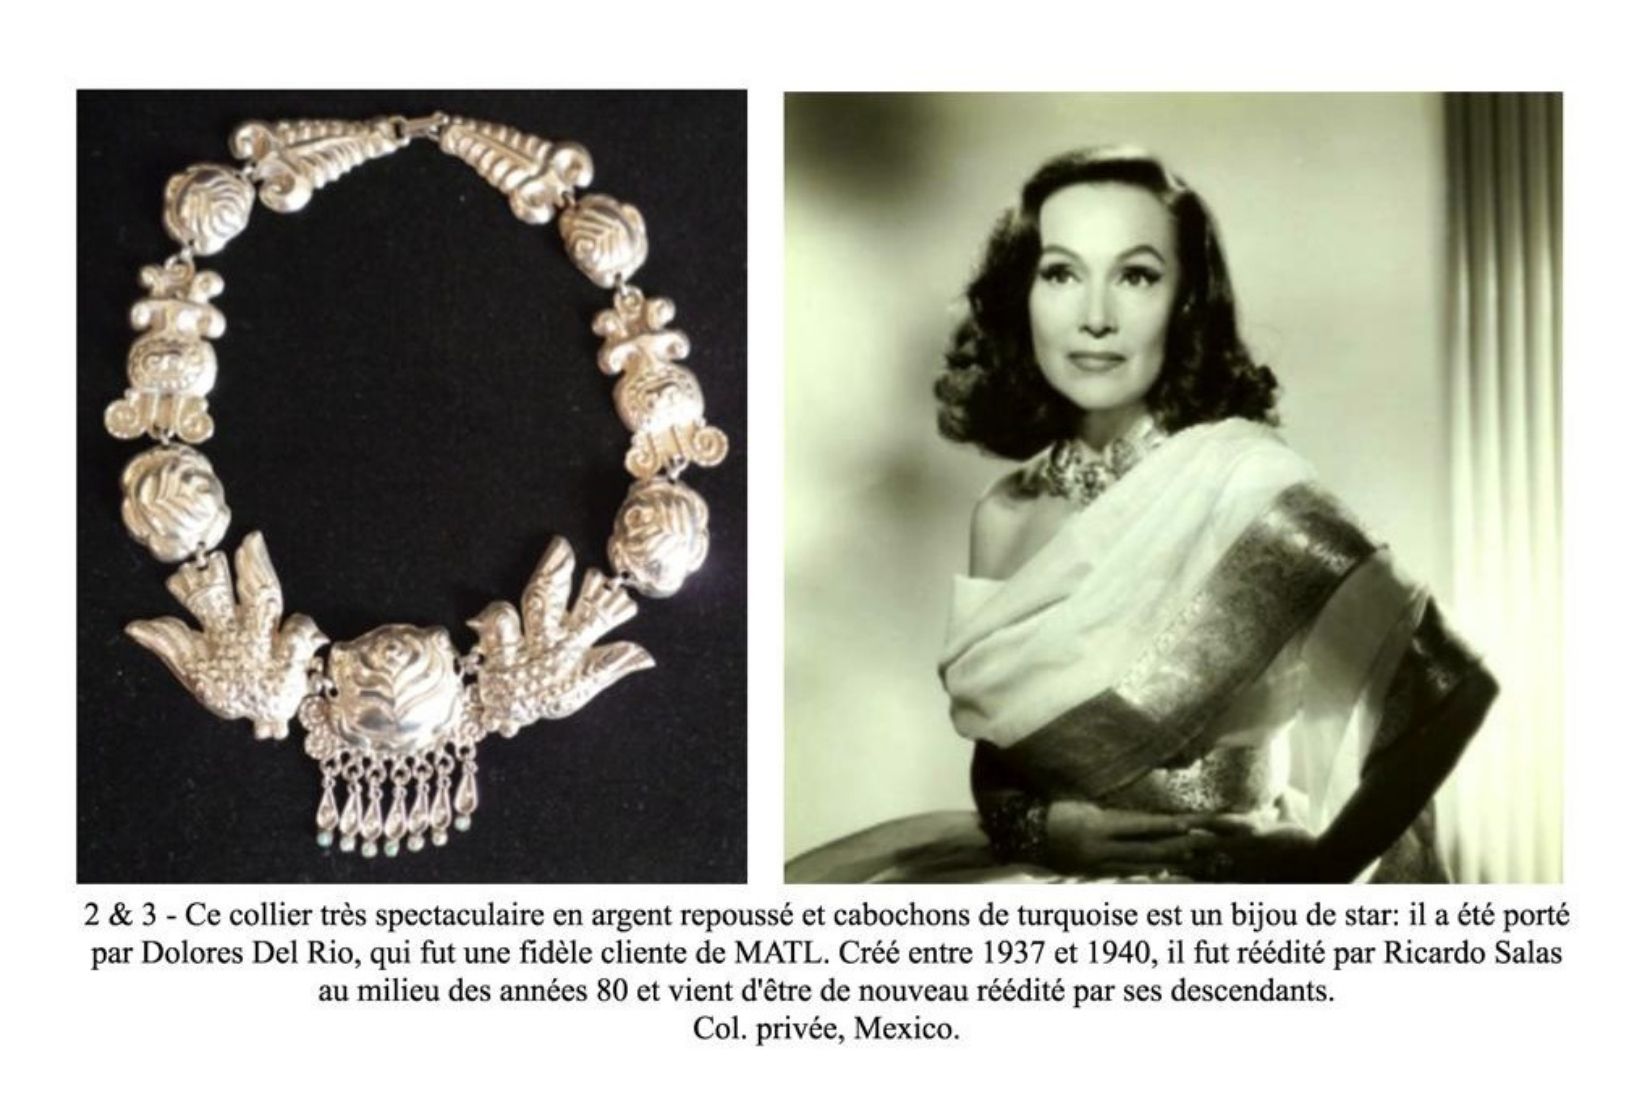 Collar de palomas. Plata repujada. Fue propiedad de Dolores del Río. Artesanos MATL. CDMX. Entre 1937-1940.  Col. Privada.